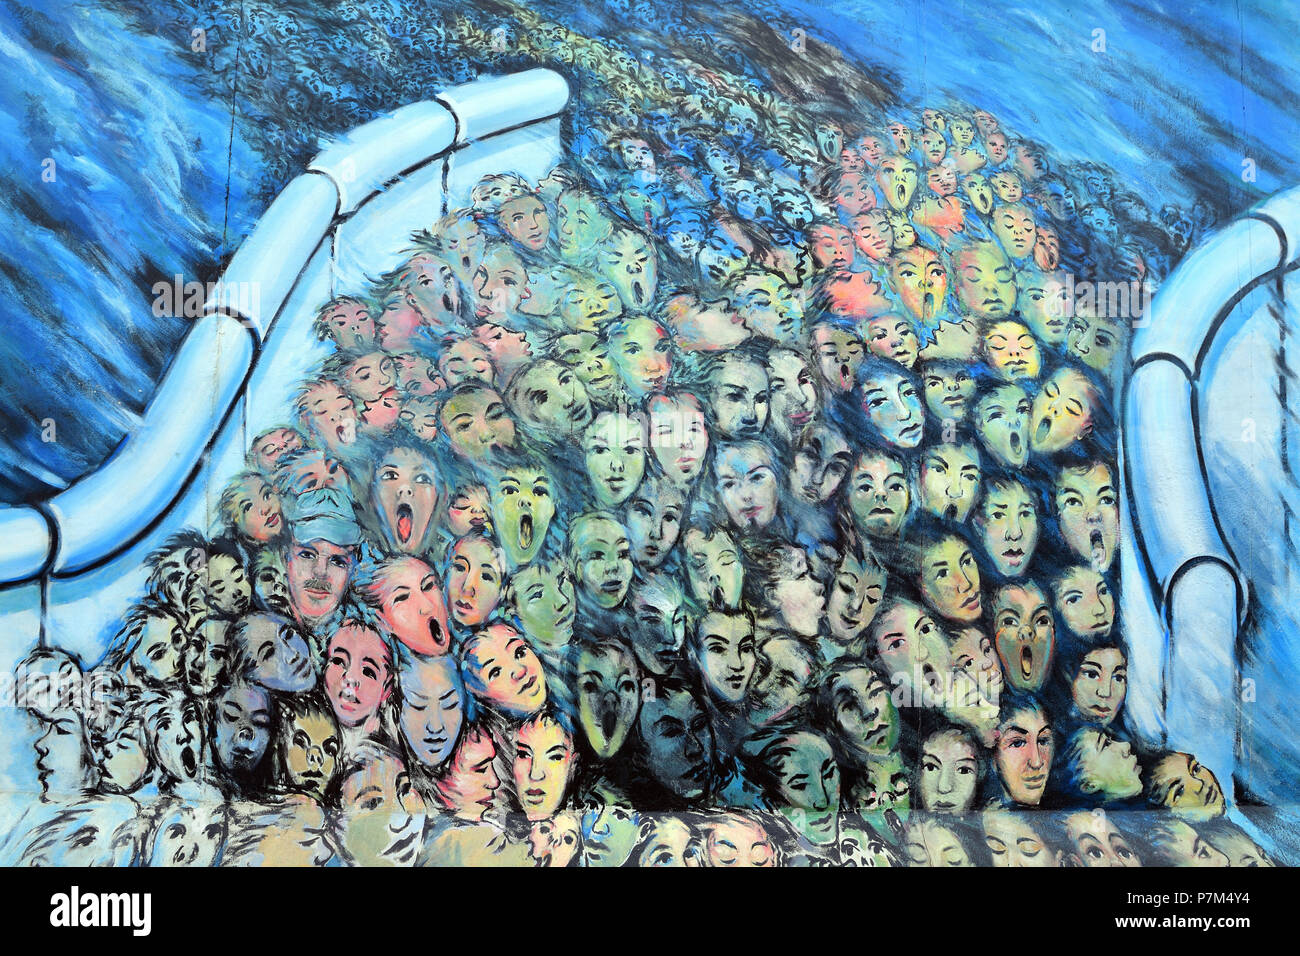 Alemania, Berlín, Friedrichshain-Kreuzberg, East Side Gallery, La Muralla, obra denominada Es geschah im November (lo que sucedió en noviembre) por Kani Alavi Foto de stock